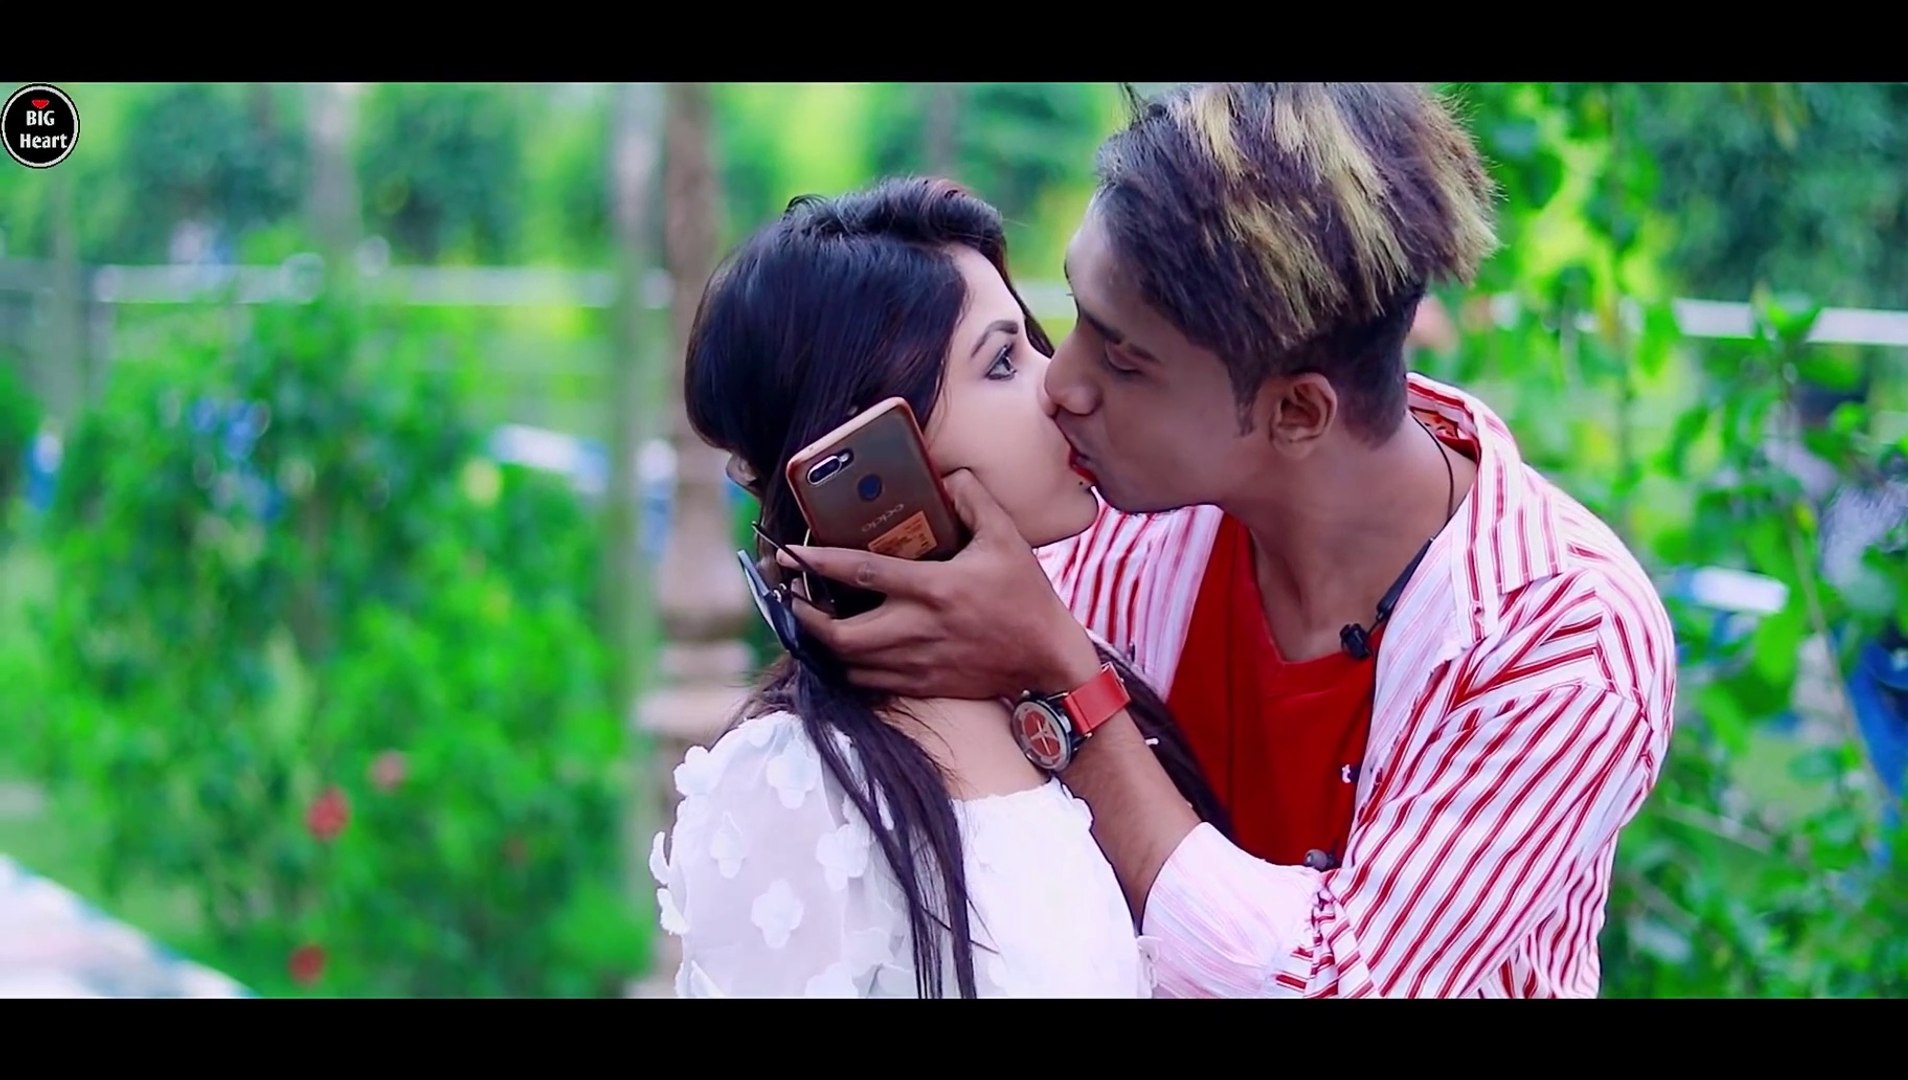 debajit chakraborty recommends Love Story Hindi Song